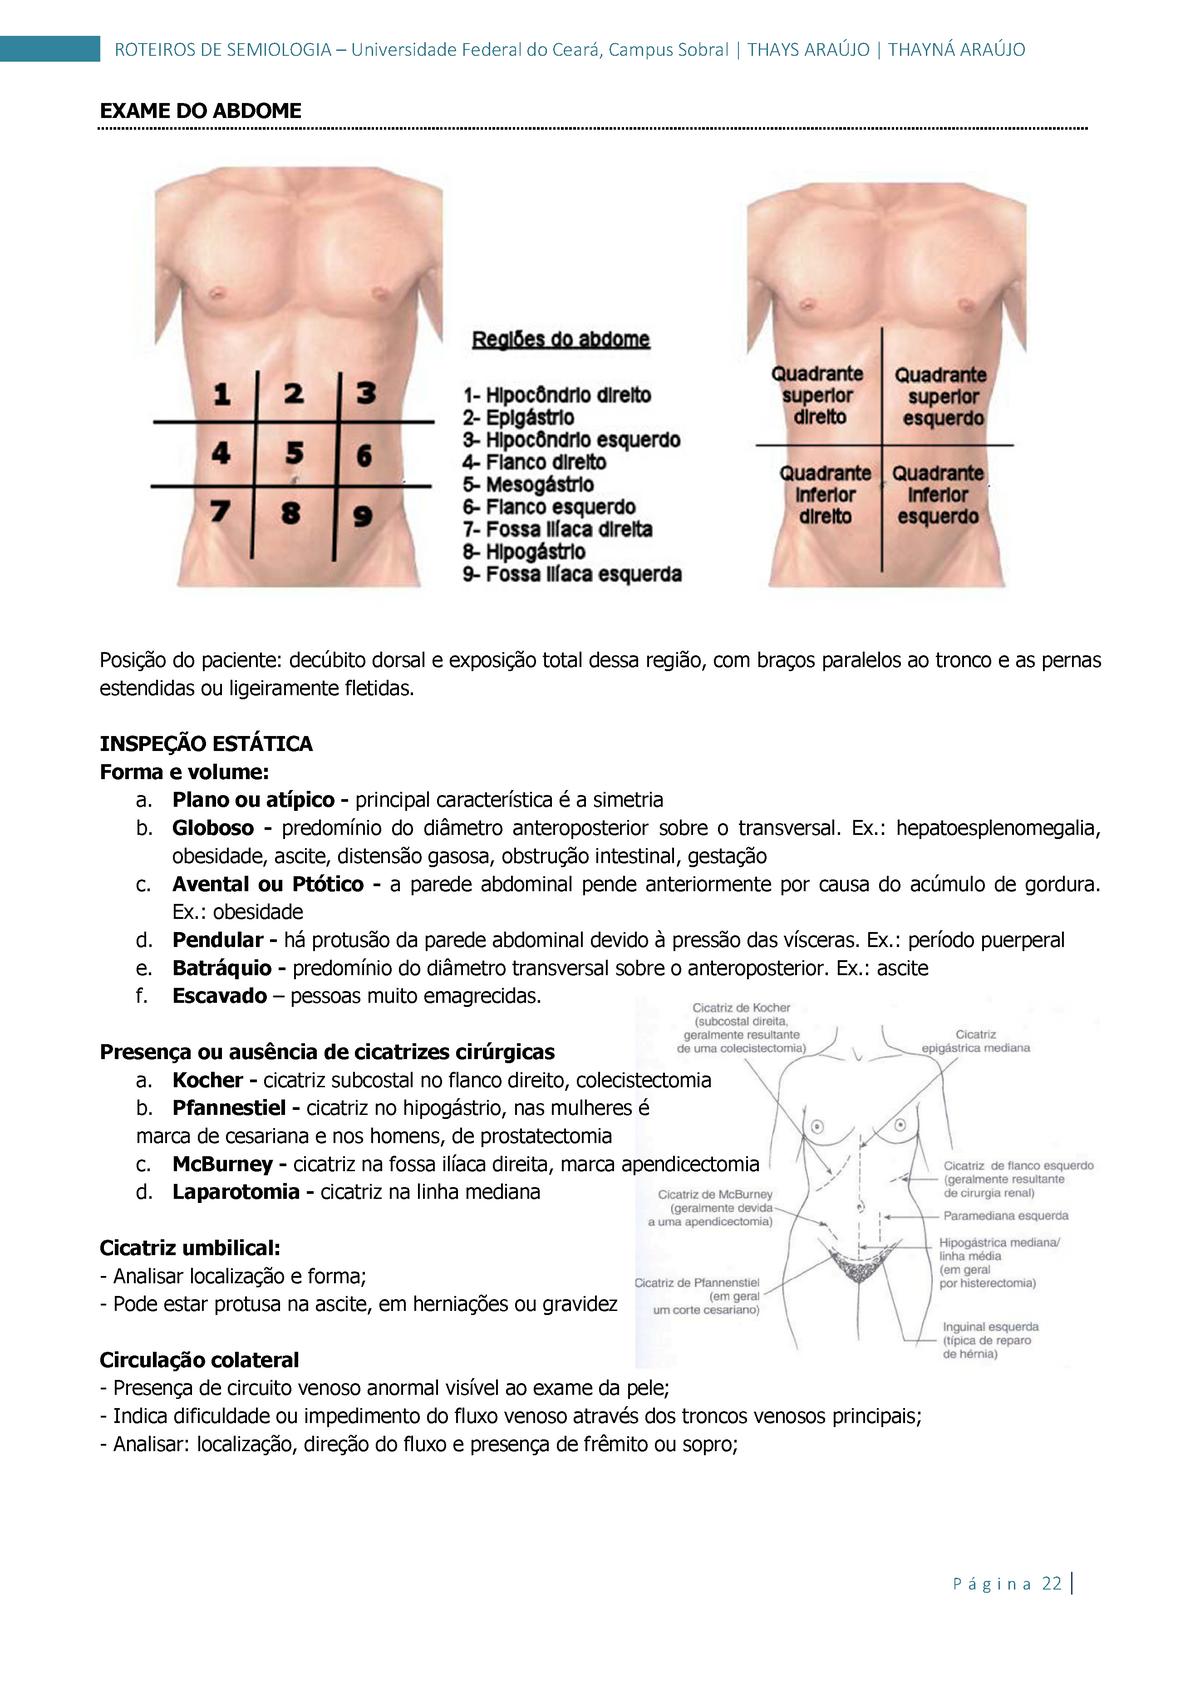 Semiologia 02 roteiro prático de anamnese e exame físico